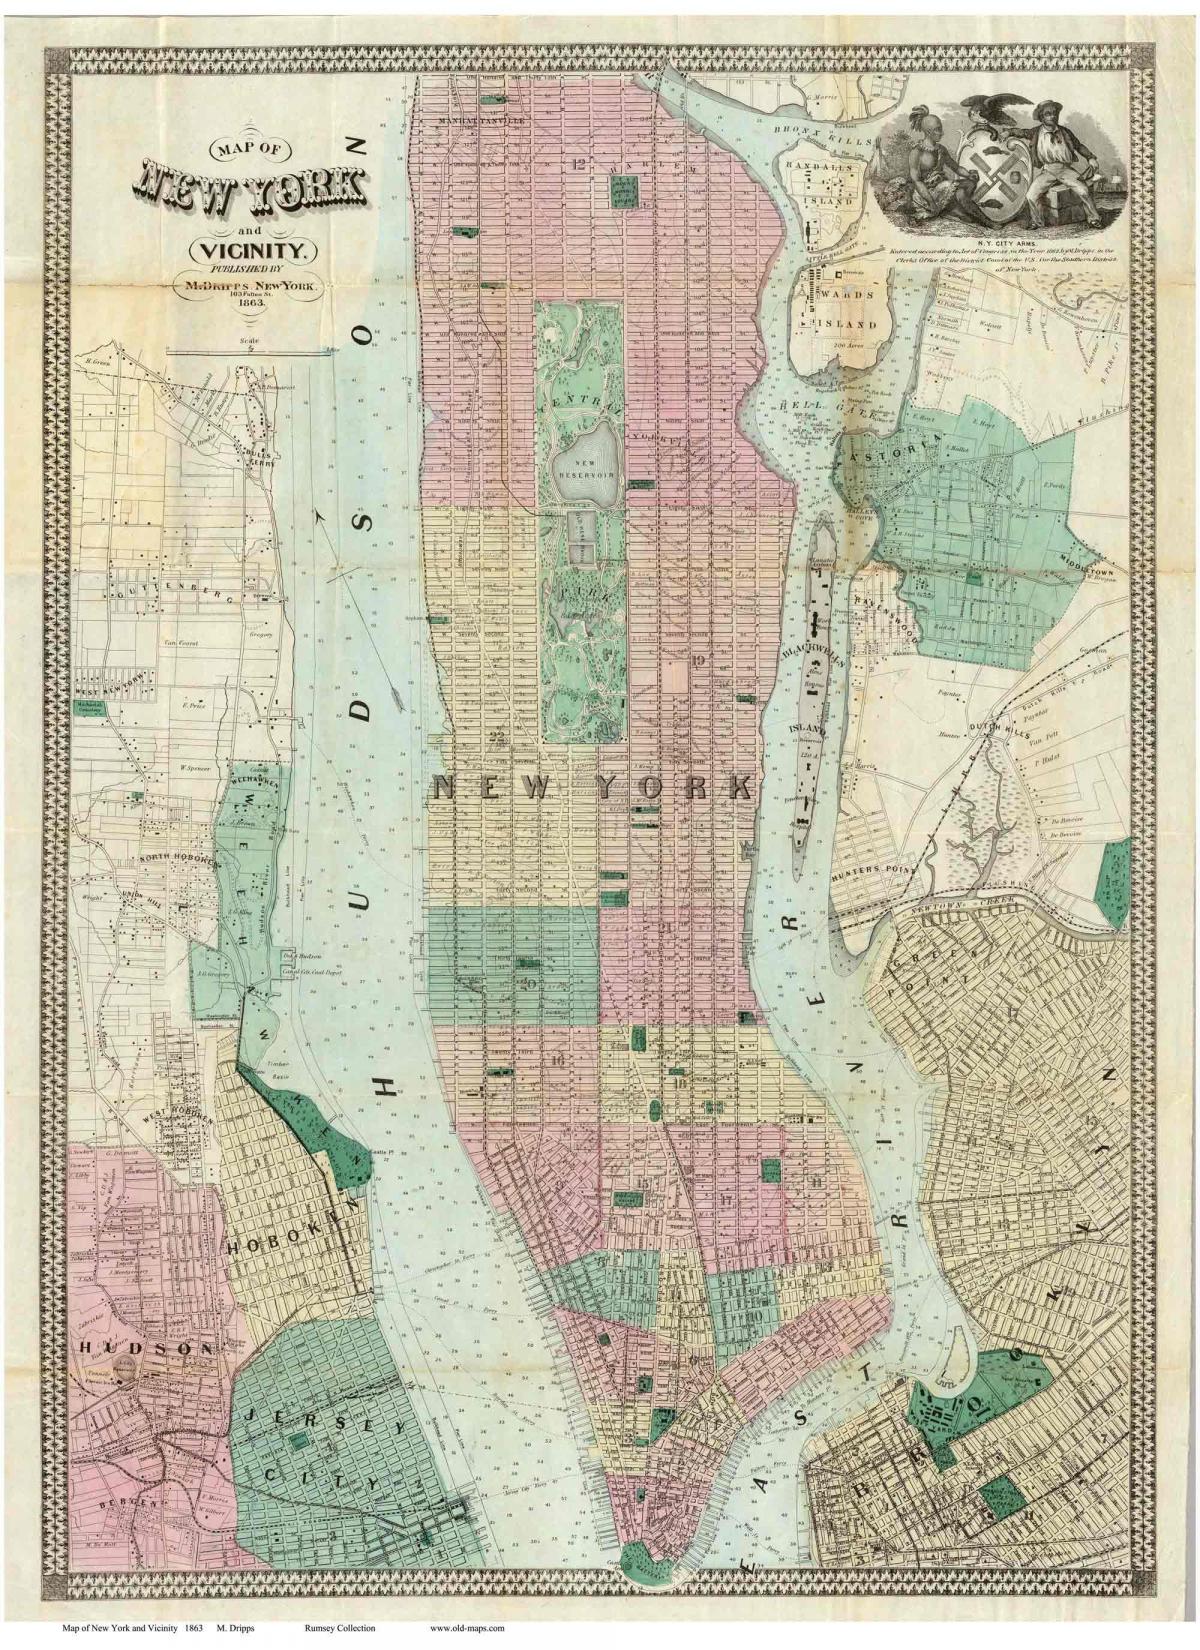 történelmi Manhattani térképek